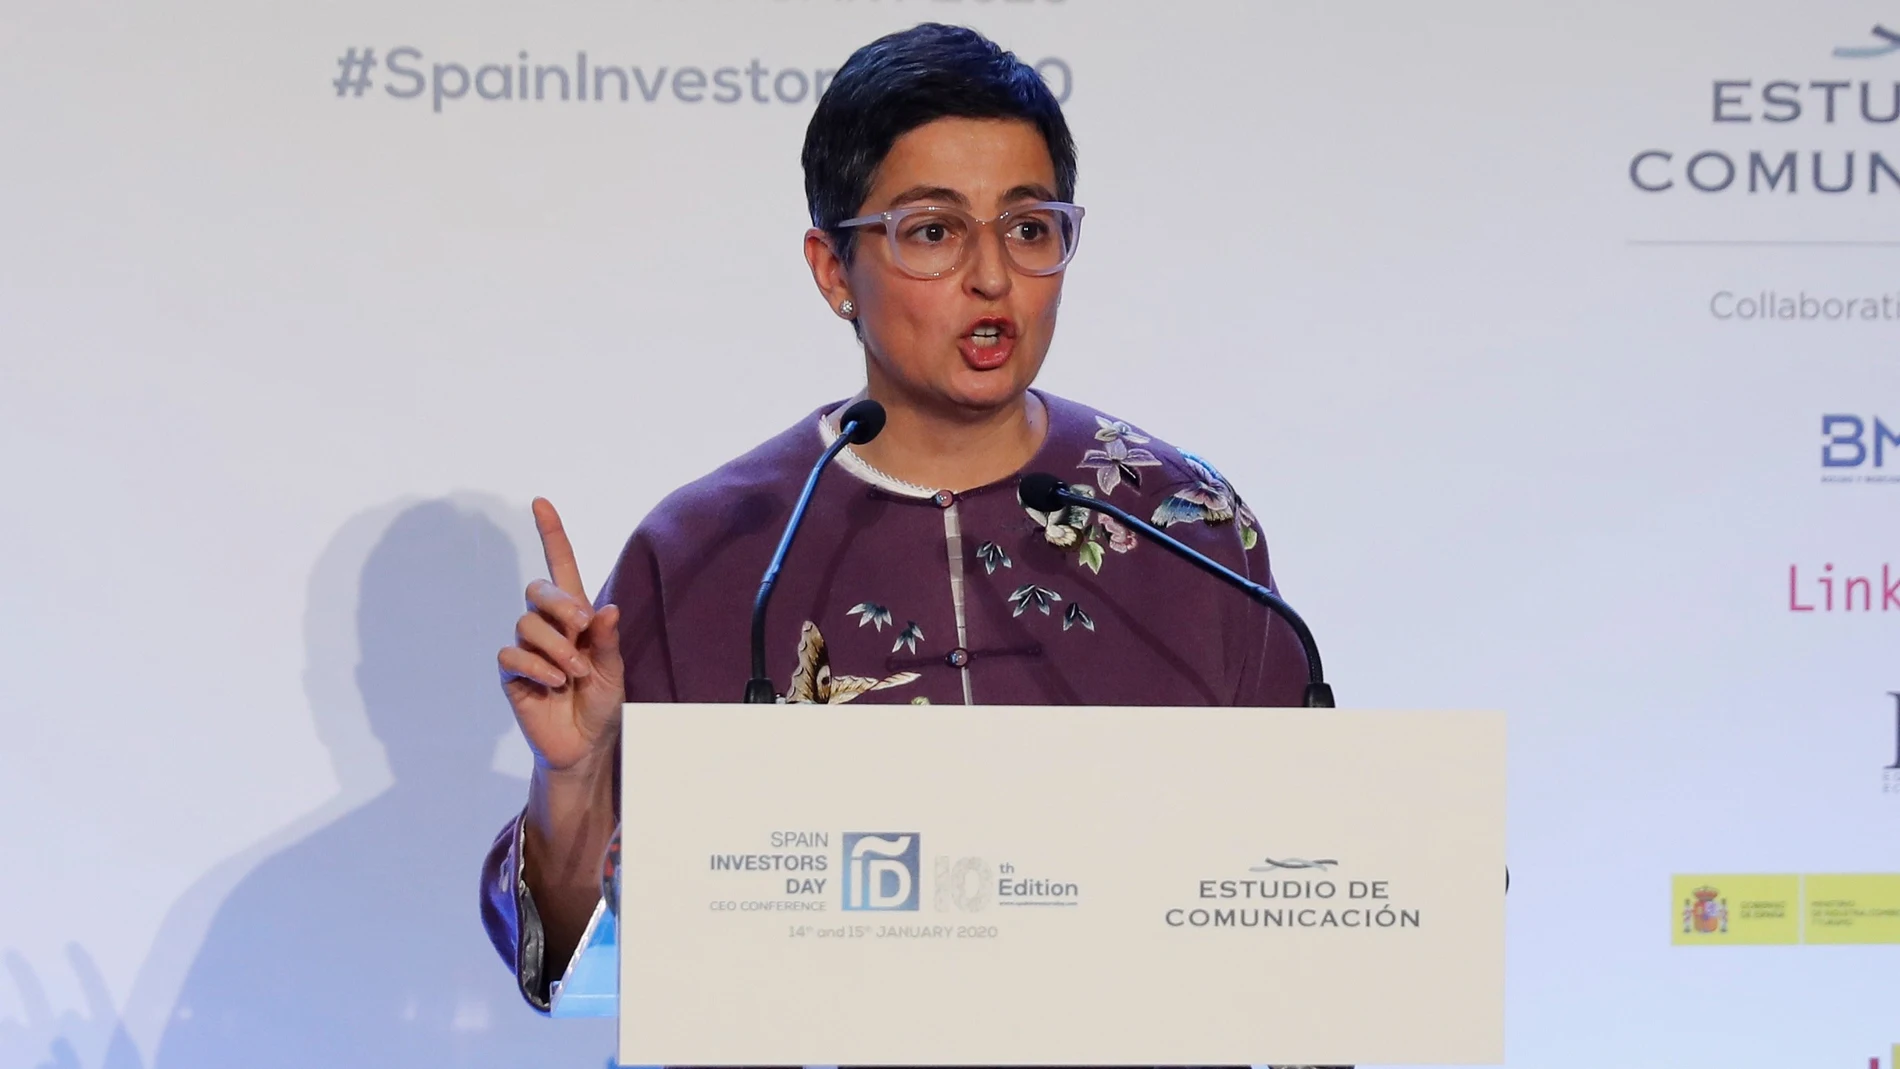 La ministra de Exteriores, Arancha Gonzalez Laya, participa este martes en la inauguración de la X edición del foro financiero internacional Spain Investors Day, que se celebra en Madrid los próximos días 15 y 16 de enero. EFE/ Ballesteros